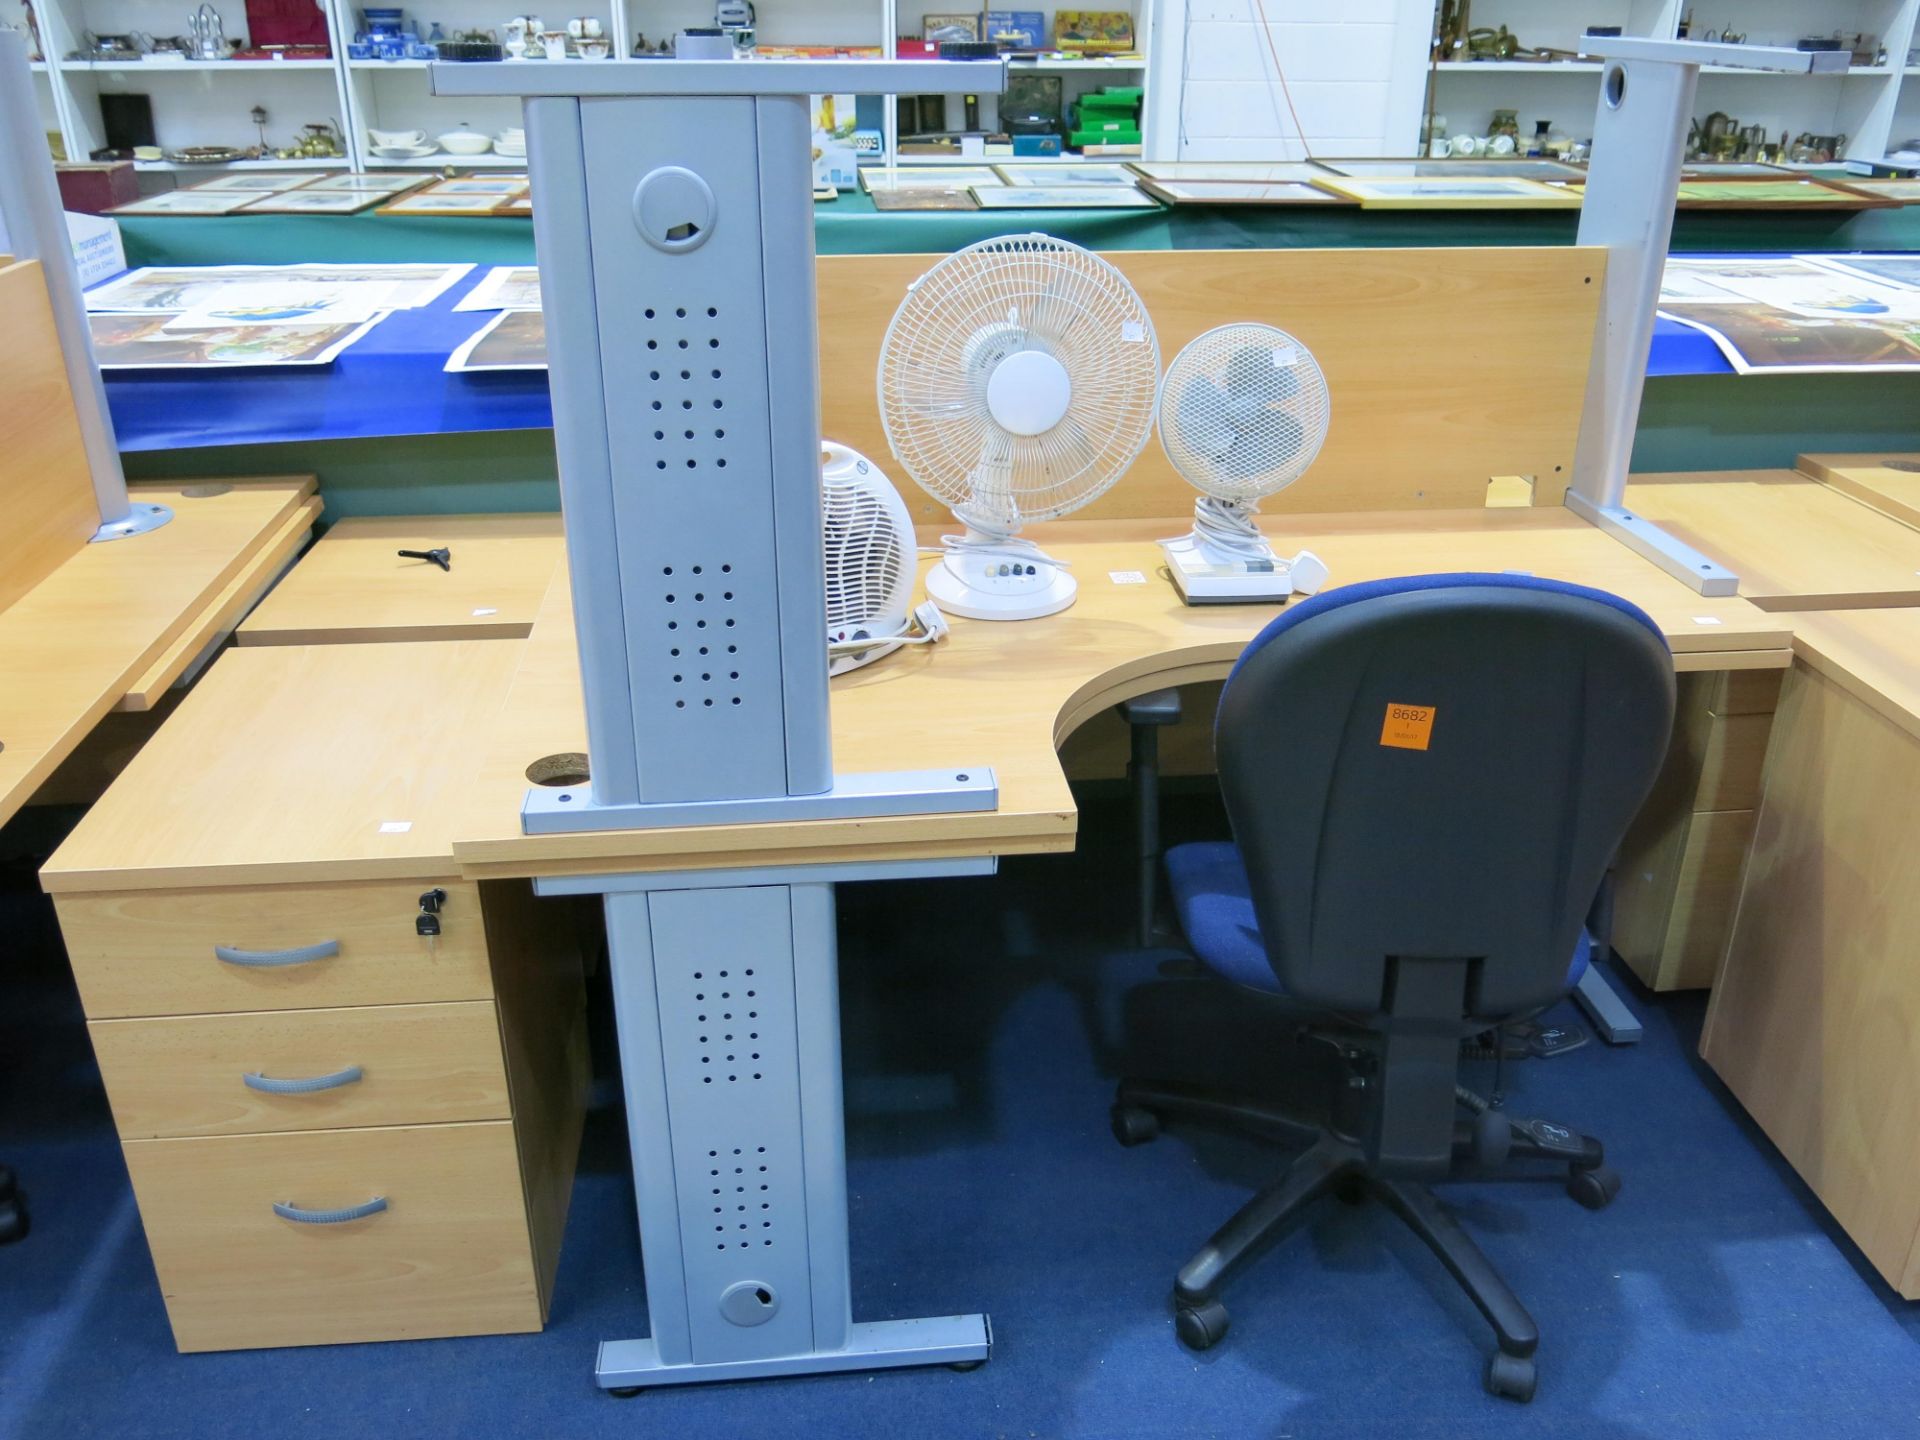 * 2 x Corner office desks, 2 x pedestals, 2 x desktop fans, 1 x heater and an operators chair